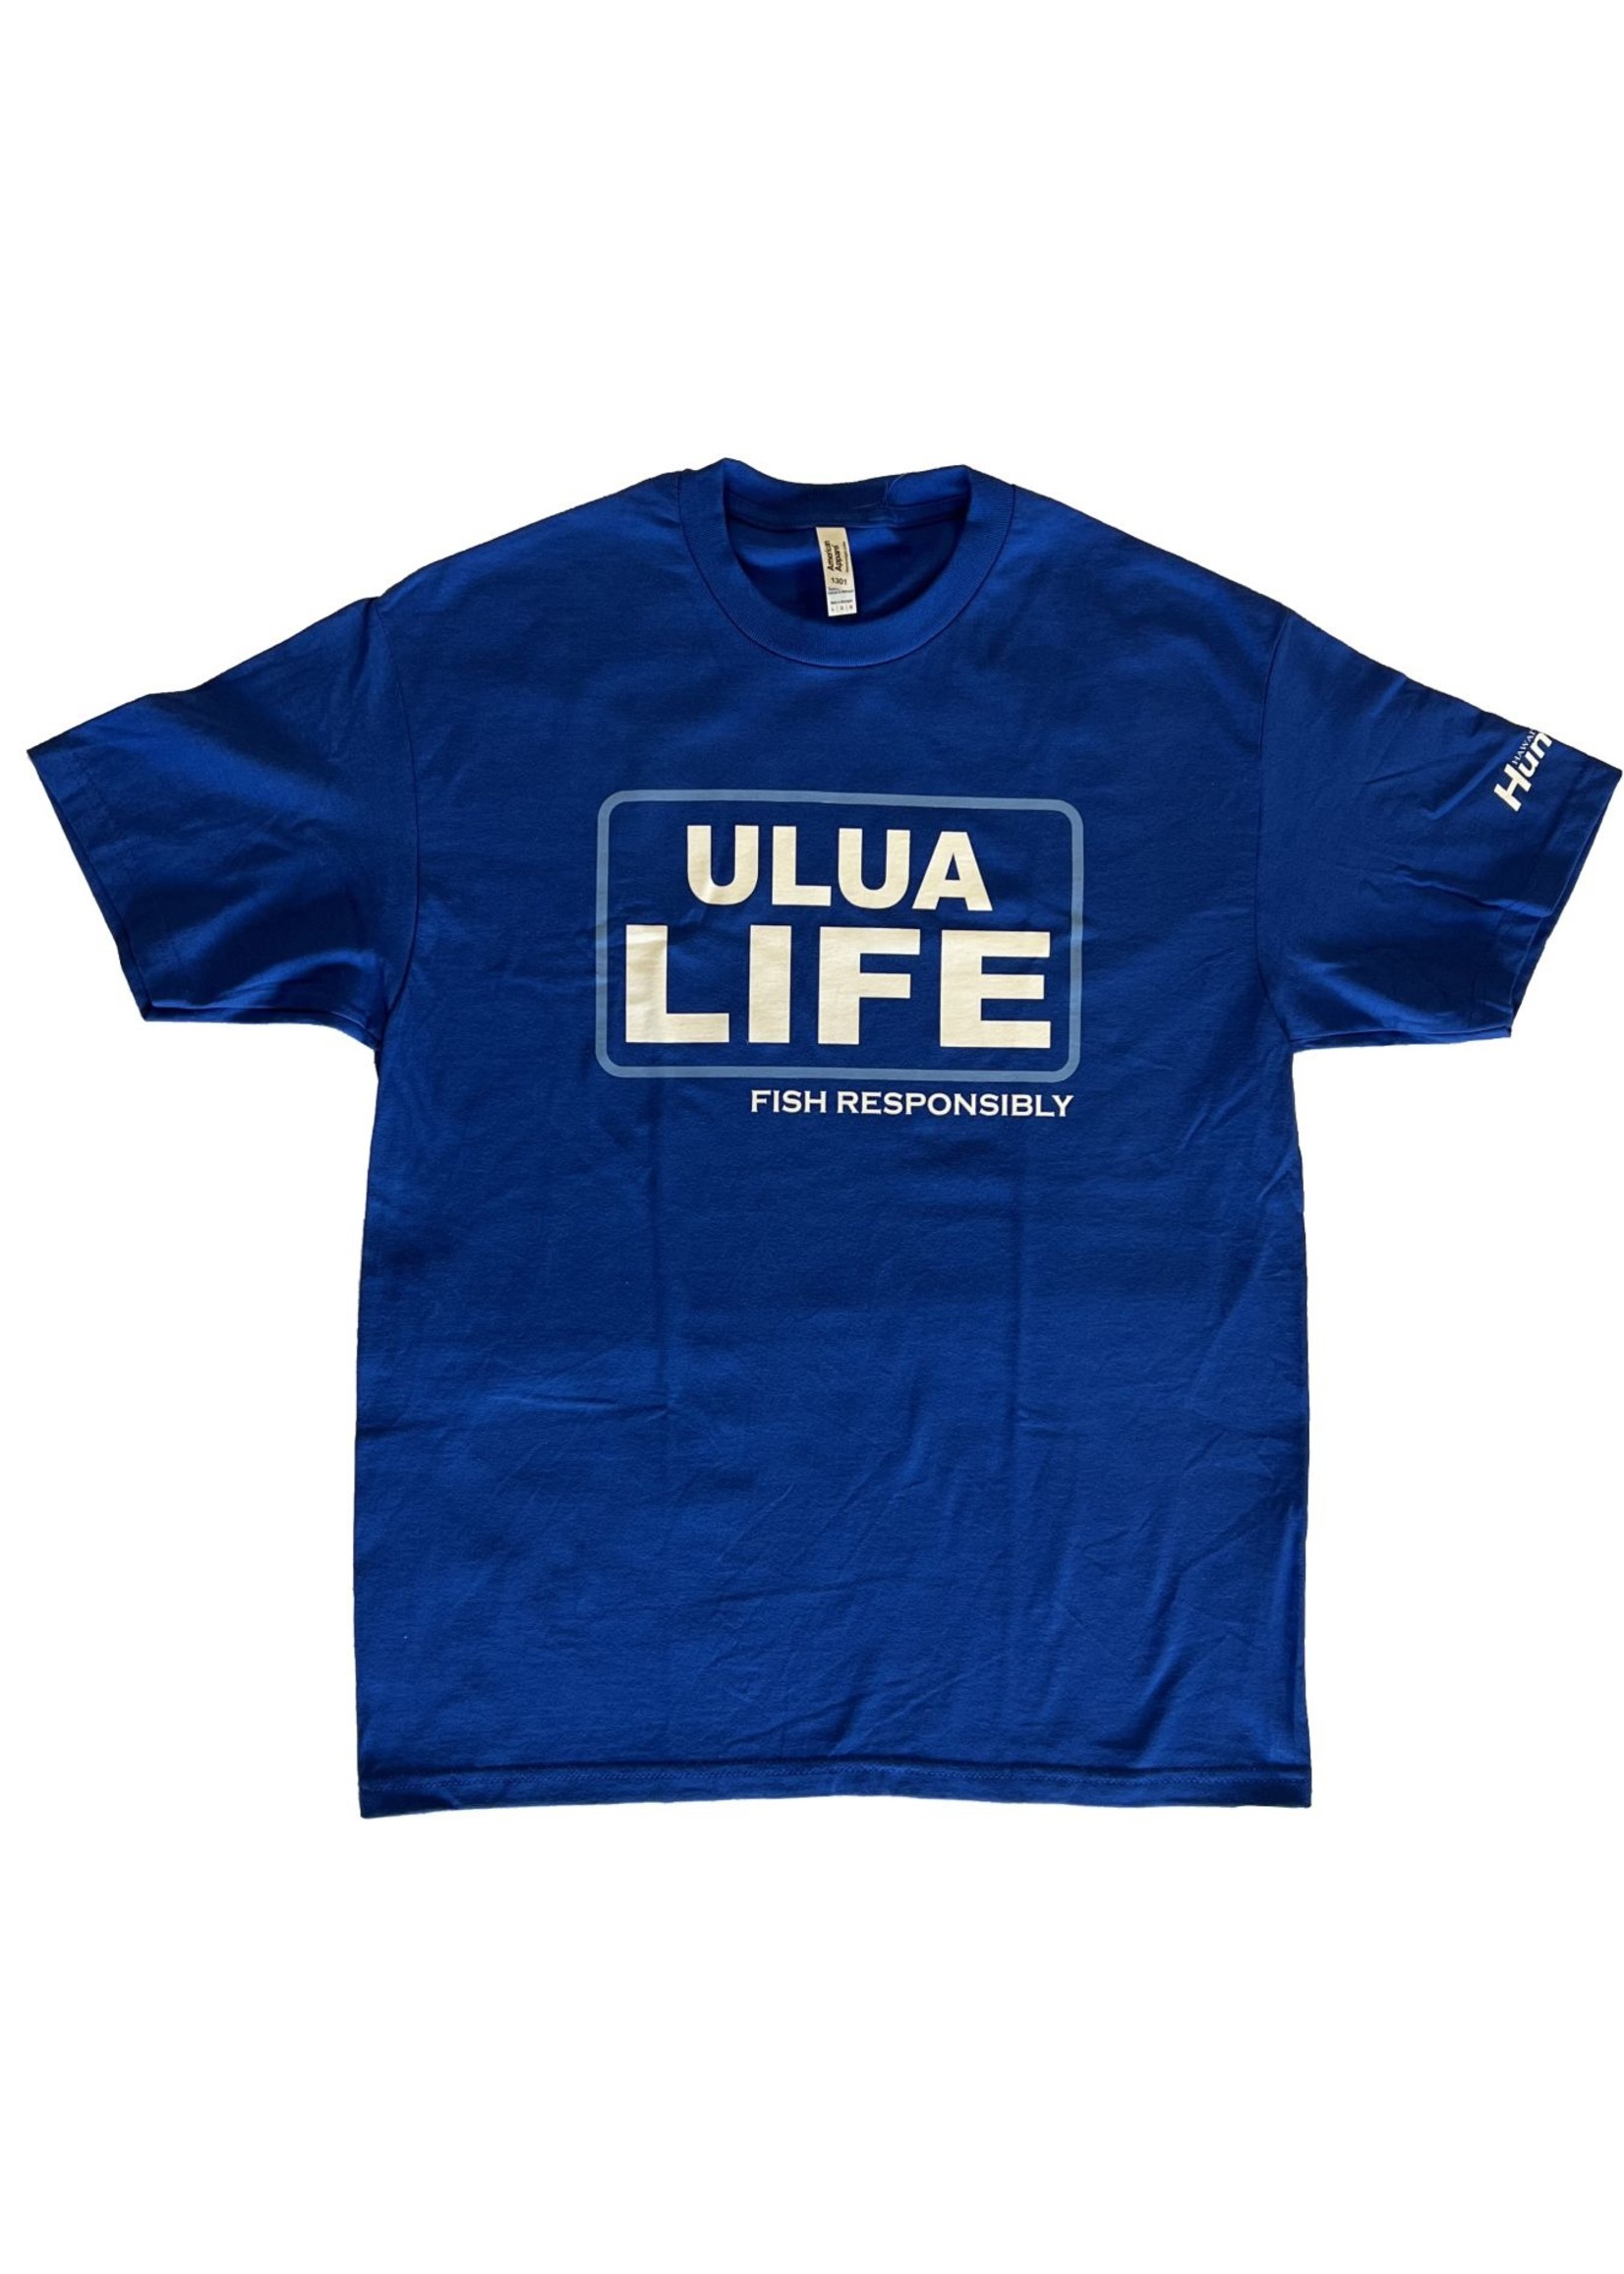 Ulua Life